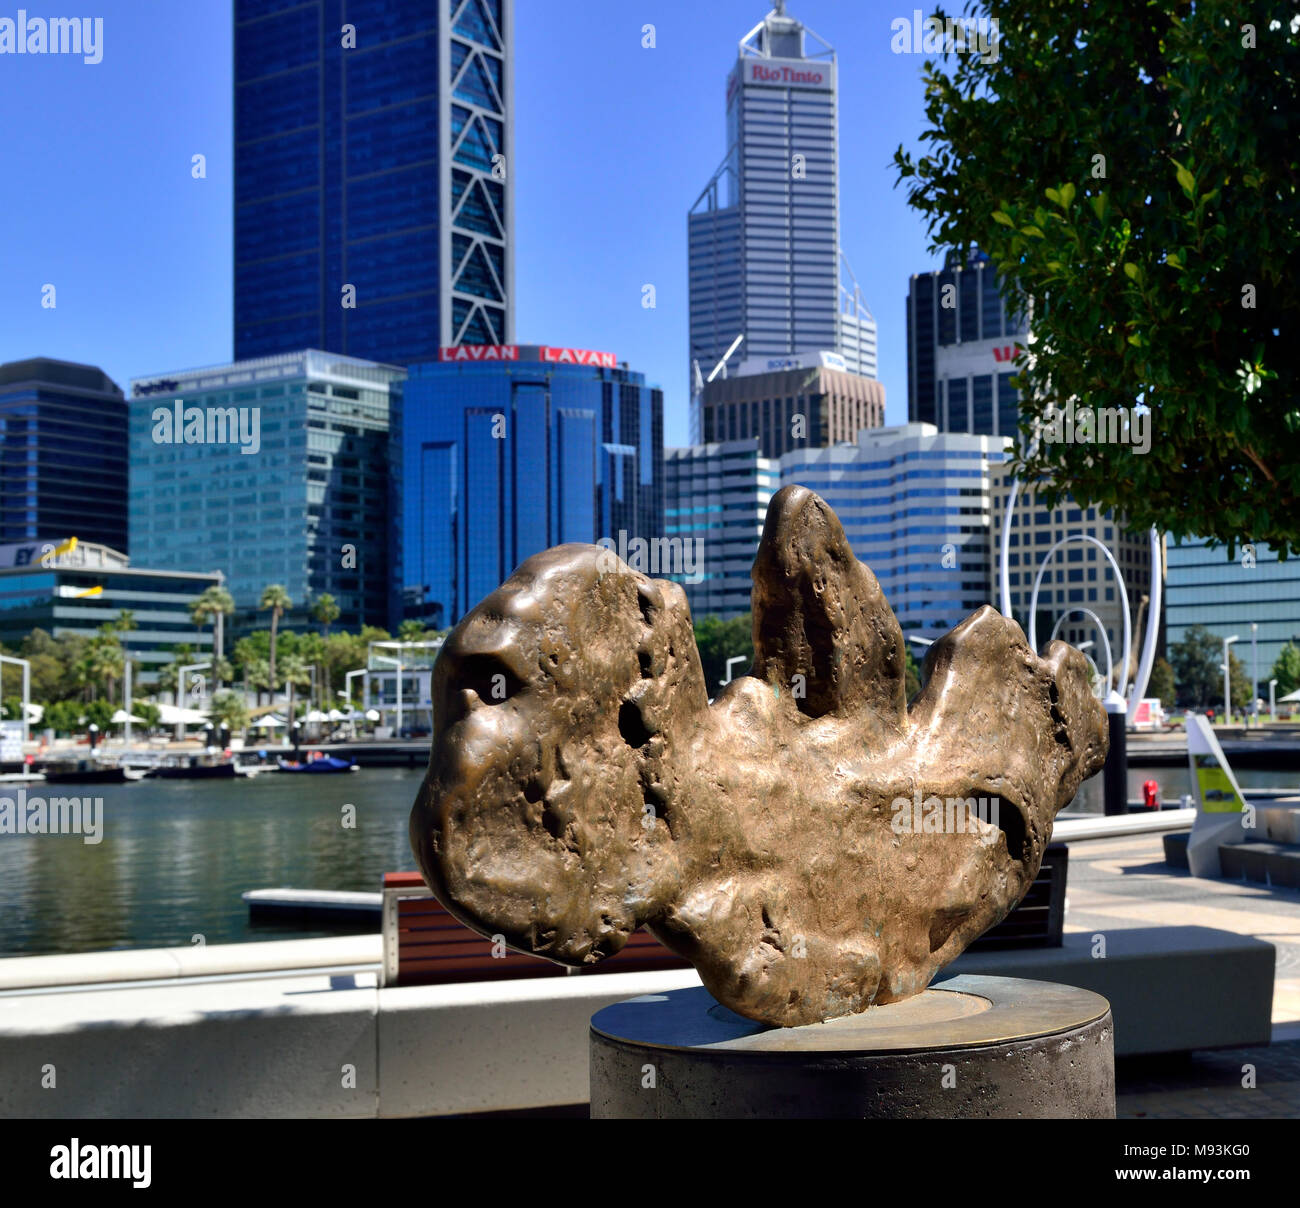 Replik der größten Gold Nugget in WA, der goldene Adler, Elizabeth Quay Perth Westaustralien gefunden Stockfoto